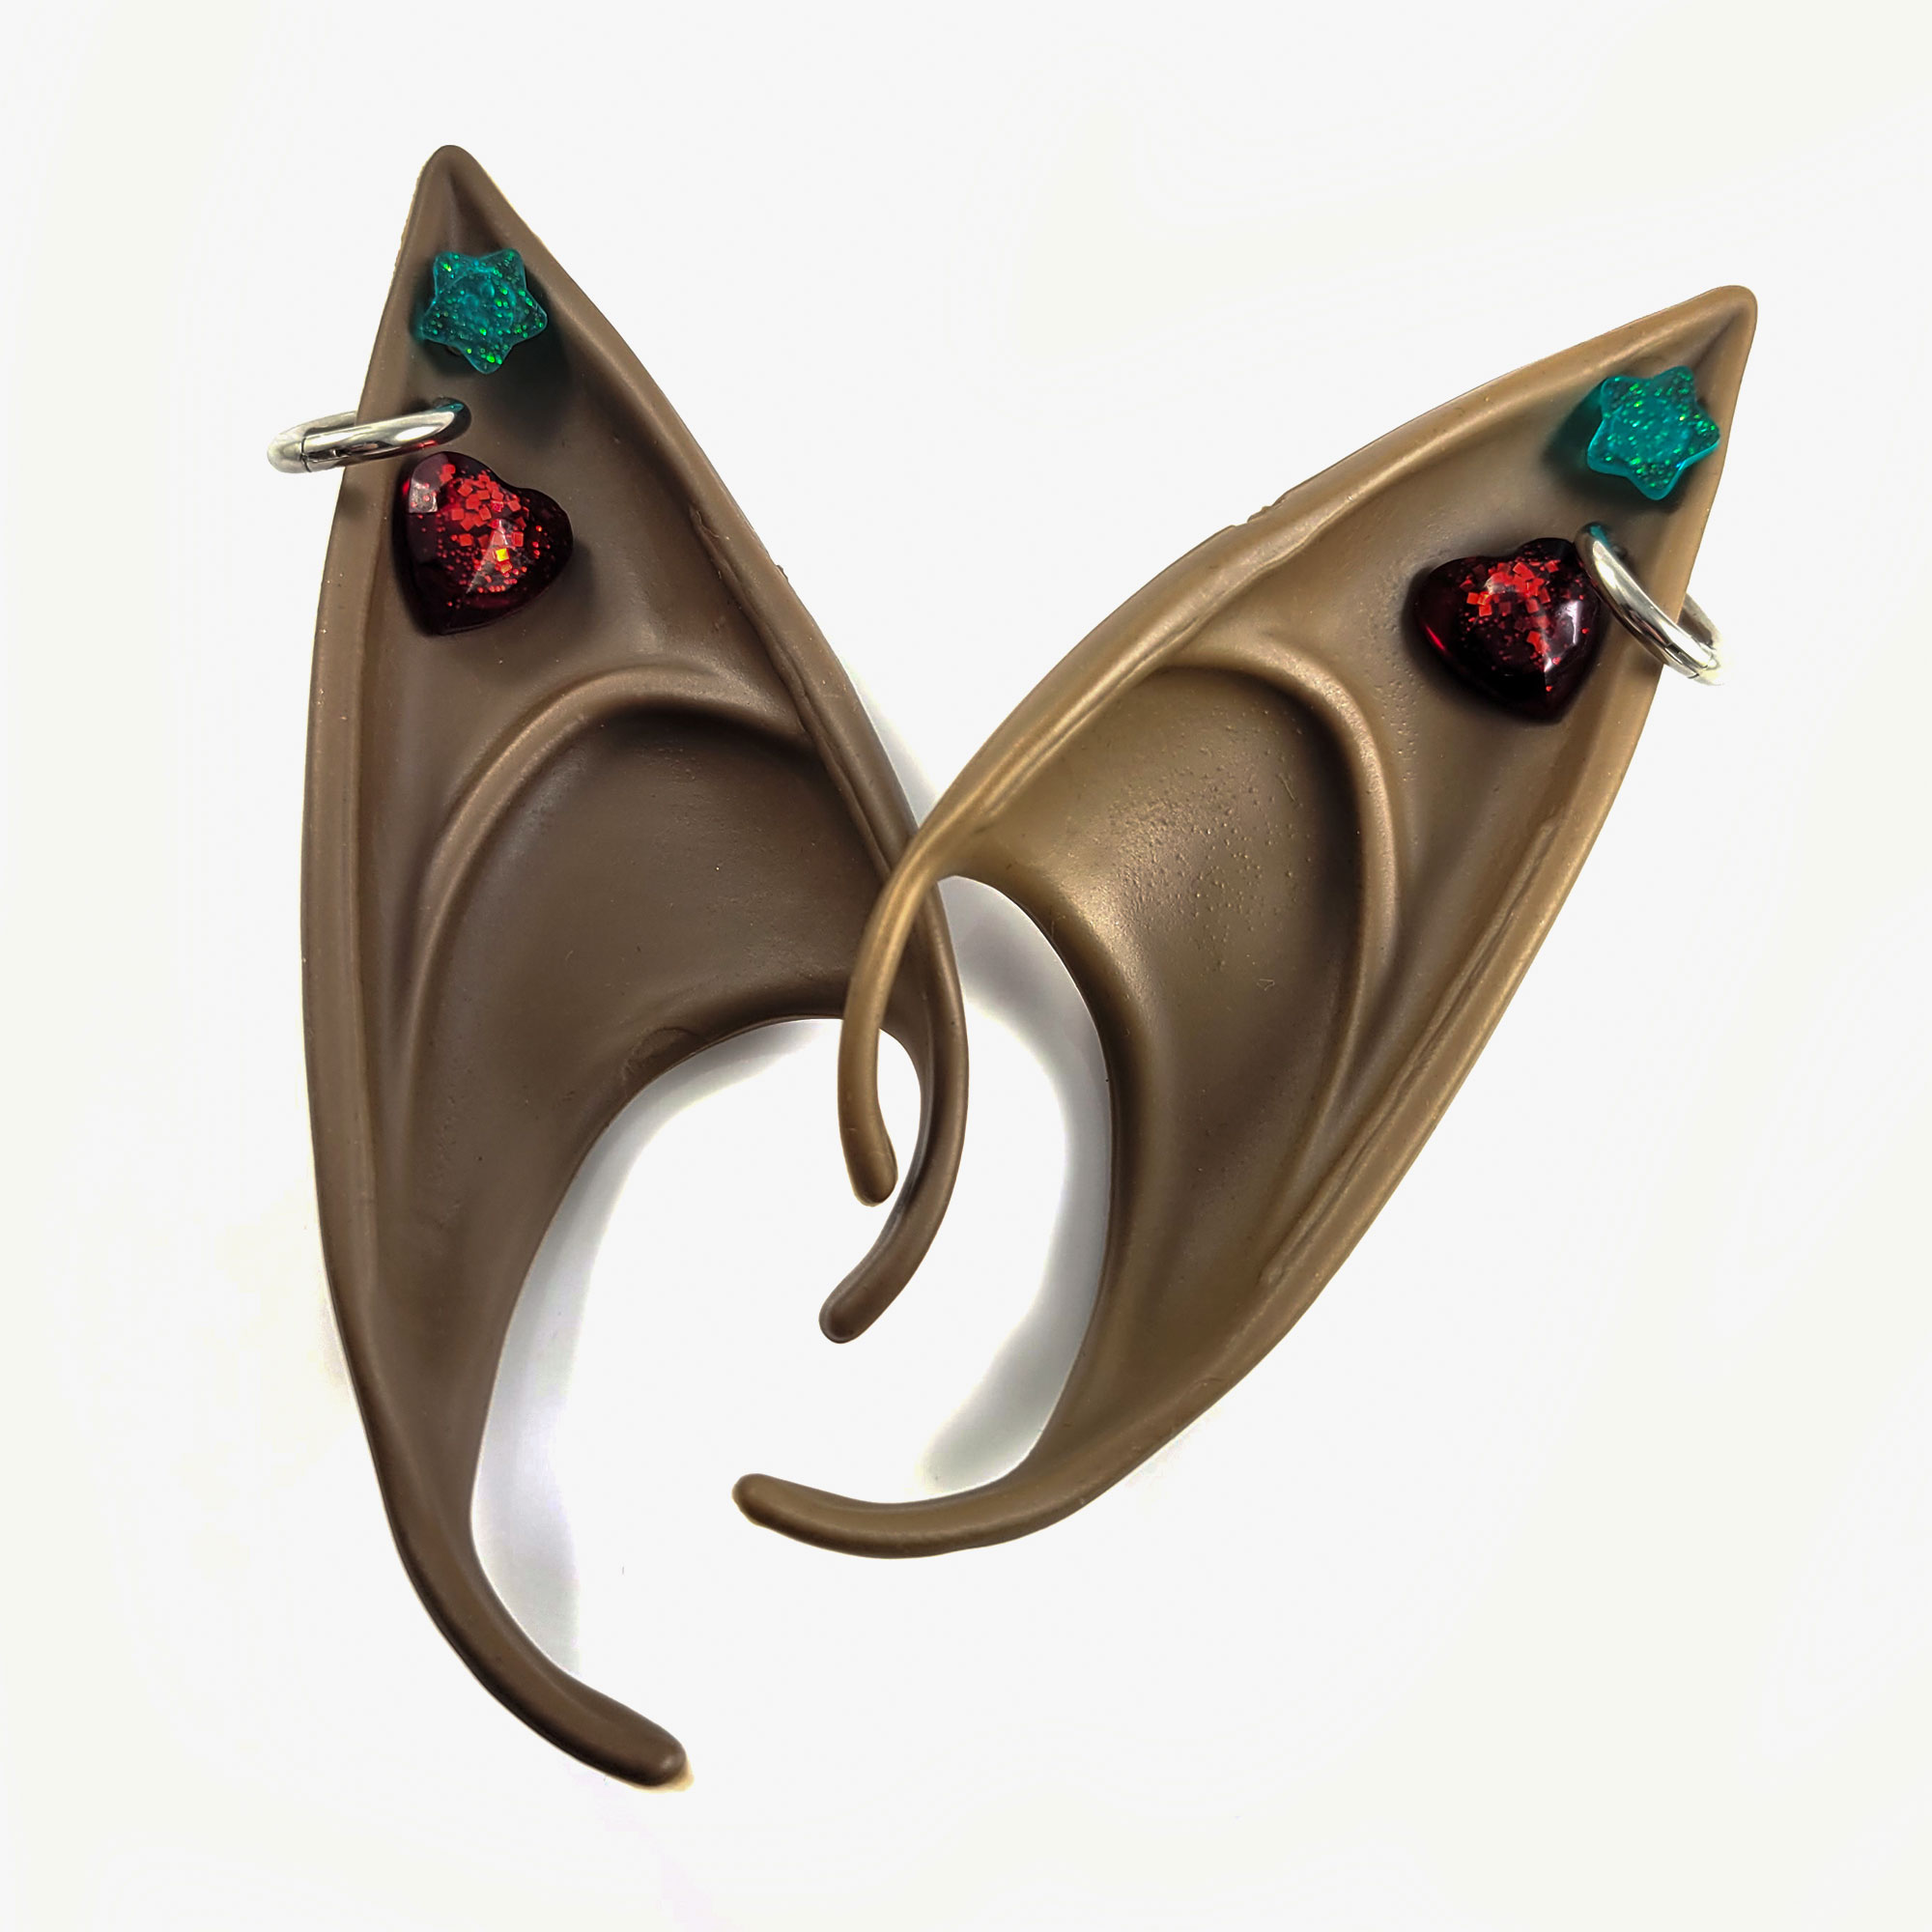 Brown Elf Ears with Teal & Red Earrings by Wilde Designs